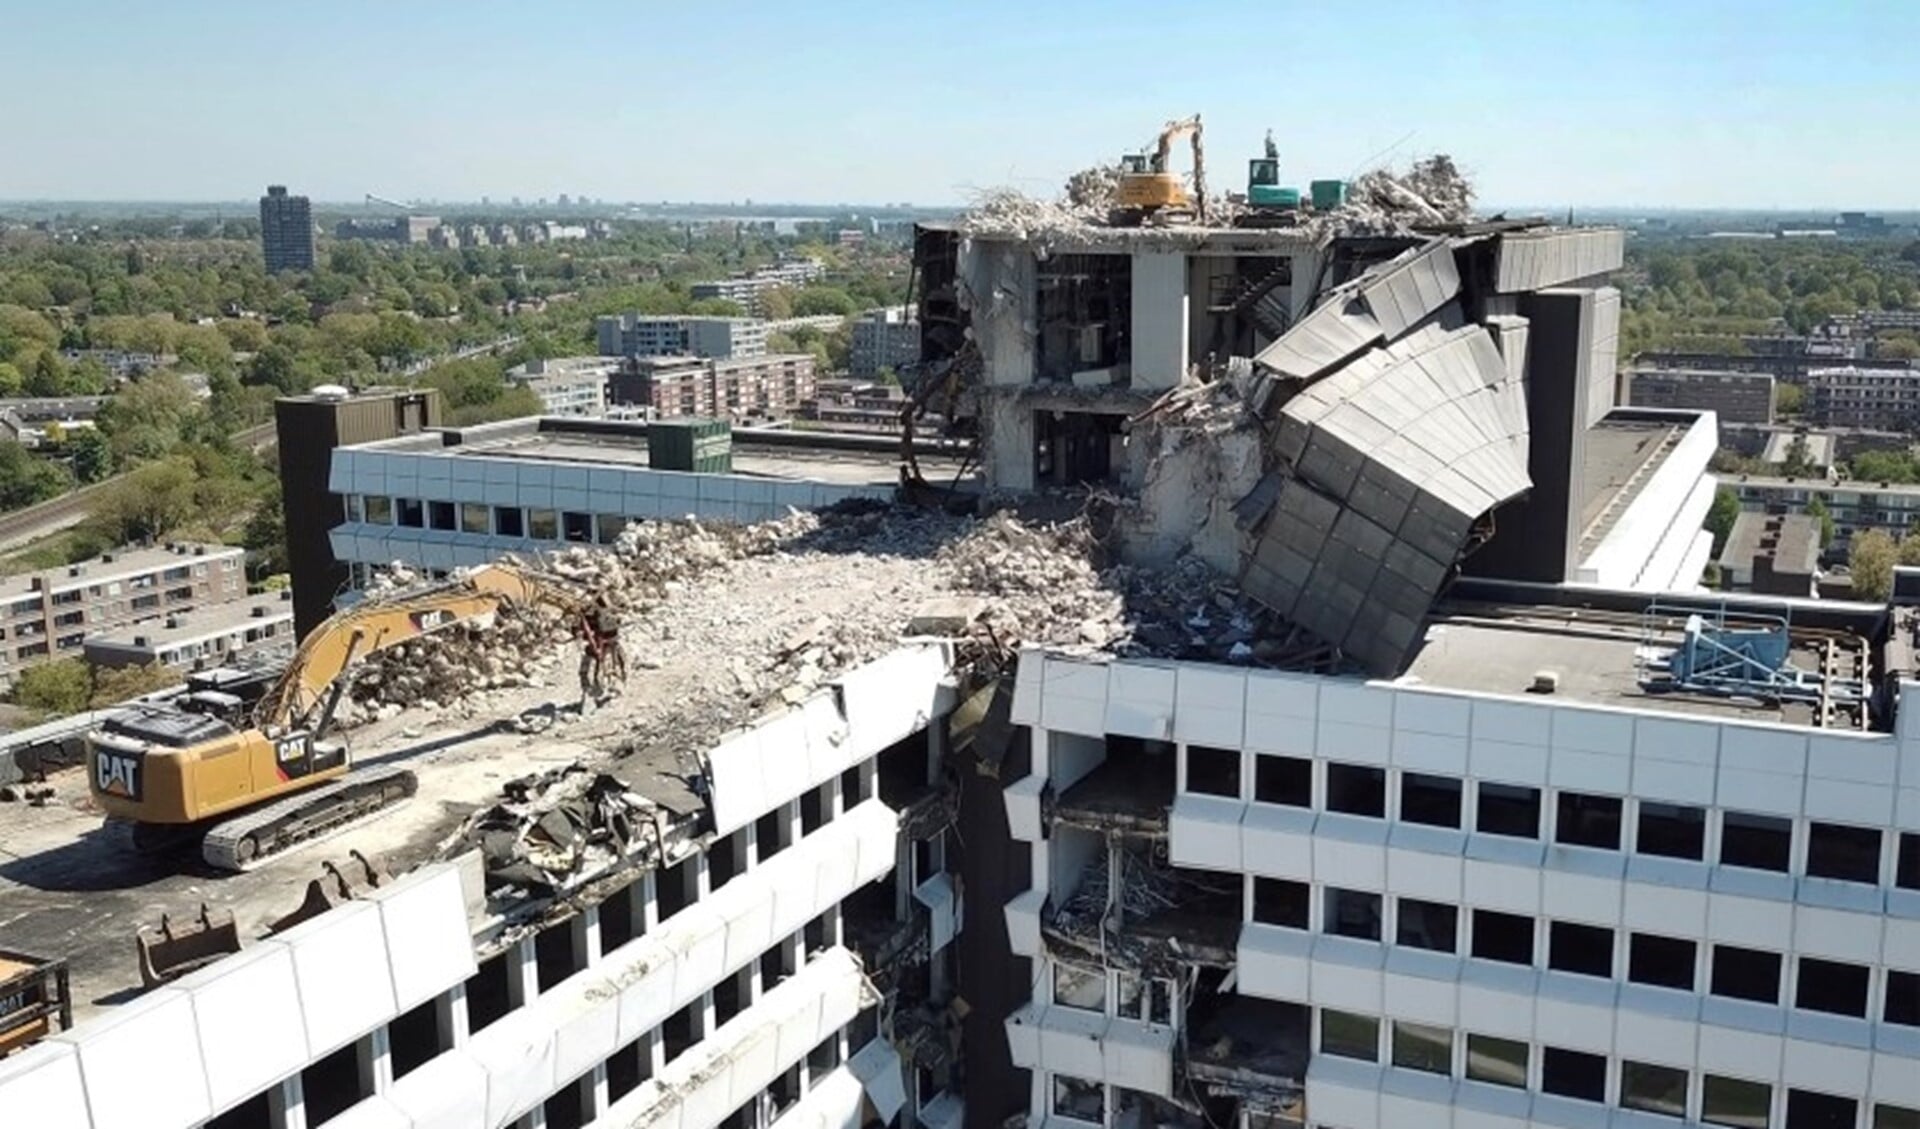 De sloop van het voormalig  CBS-gebouw zorgt voor overlast (Foto: MIchel Groen)